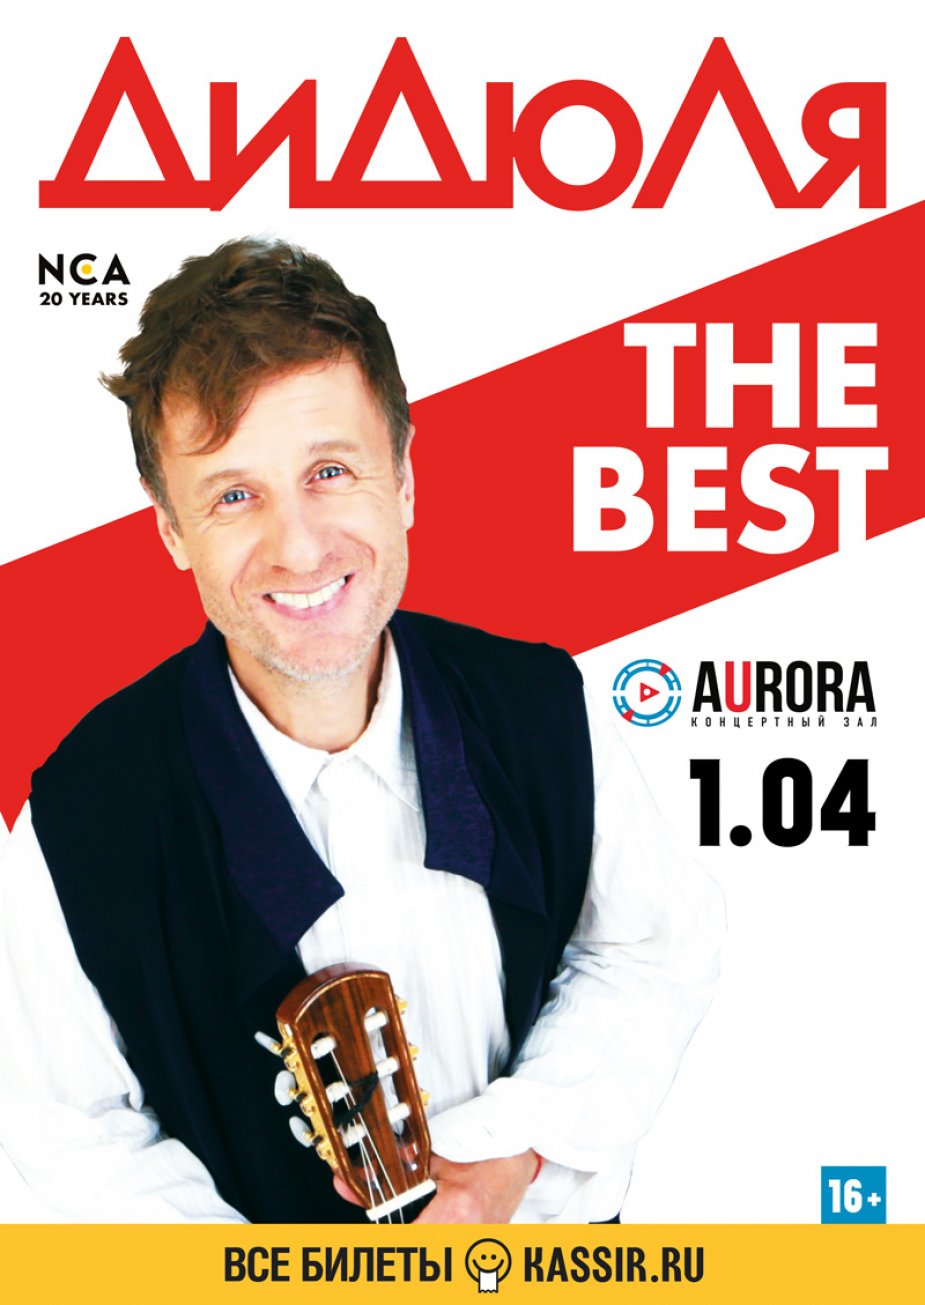 ДиДюЛя с программой ТНЕ BEST. Aurora Concert Hall